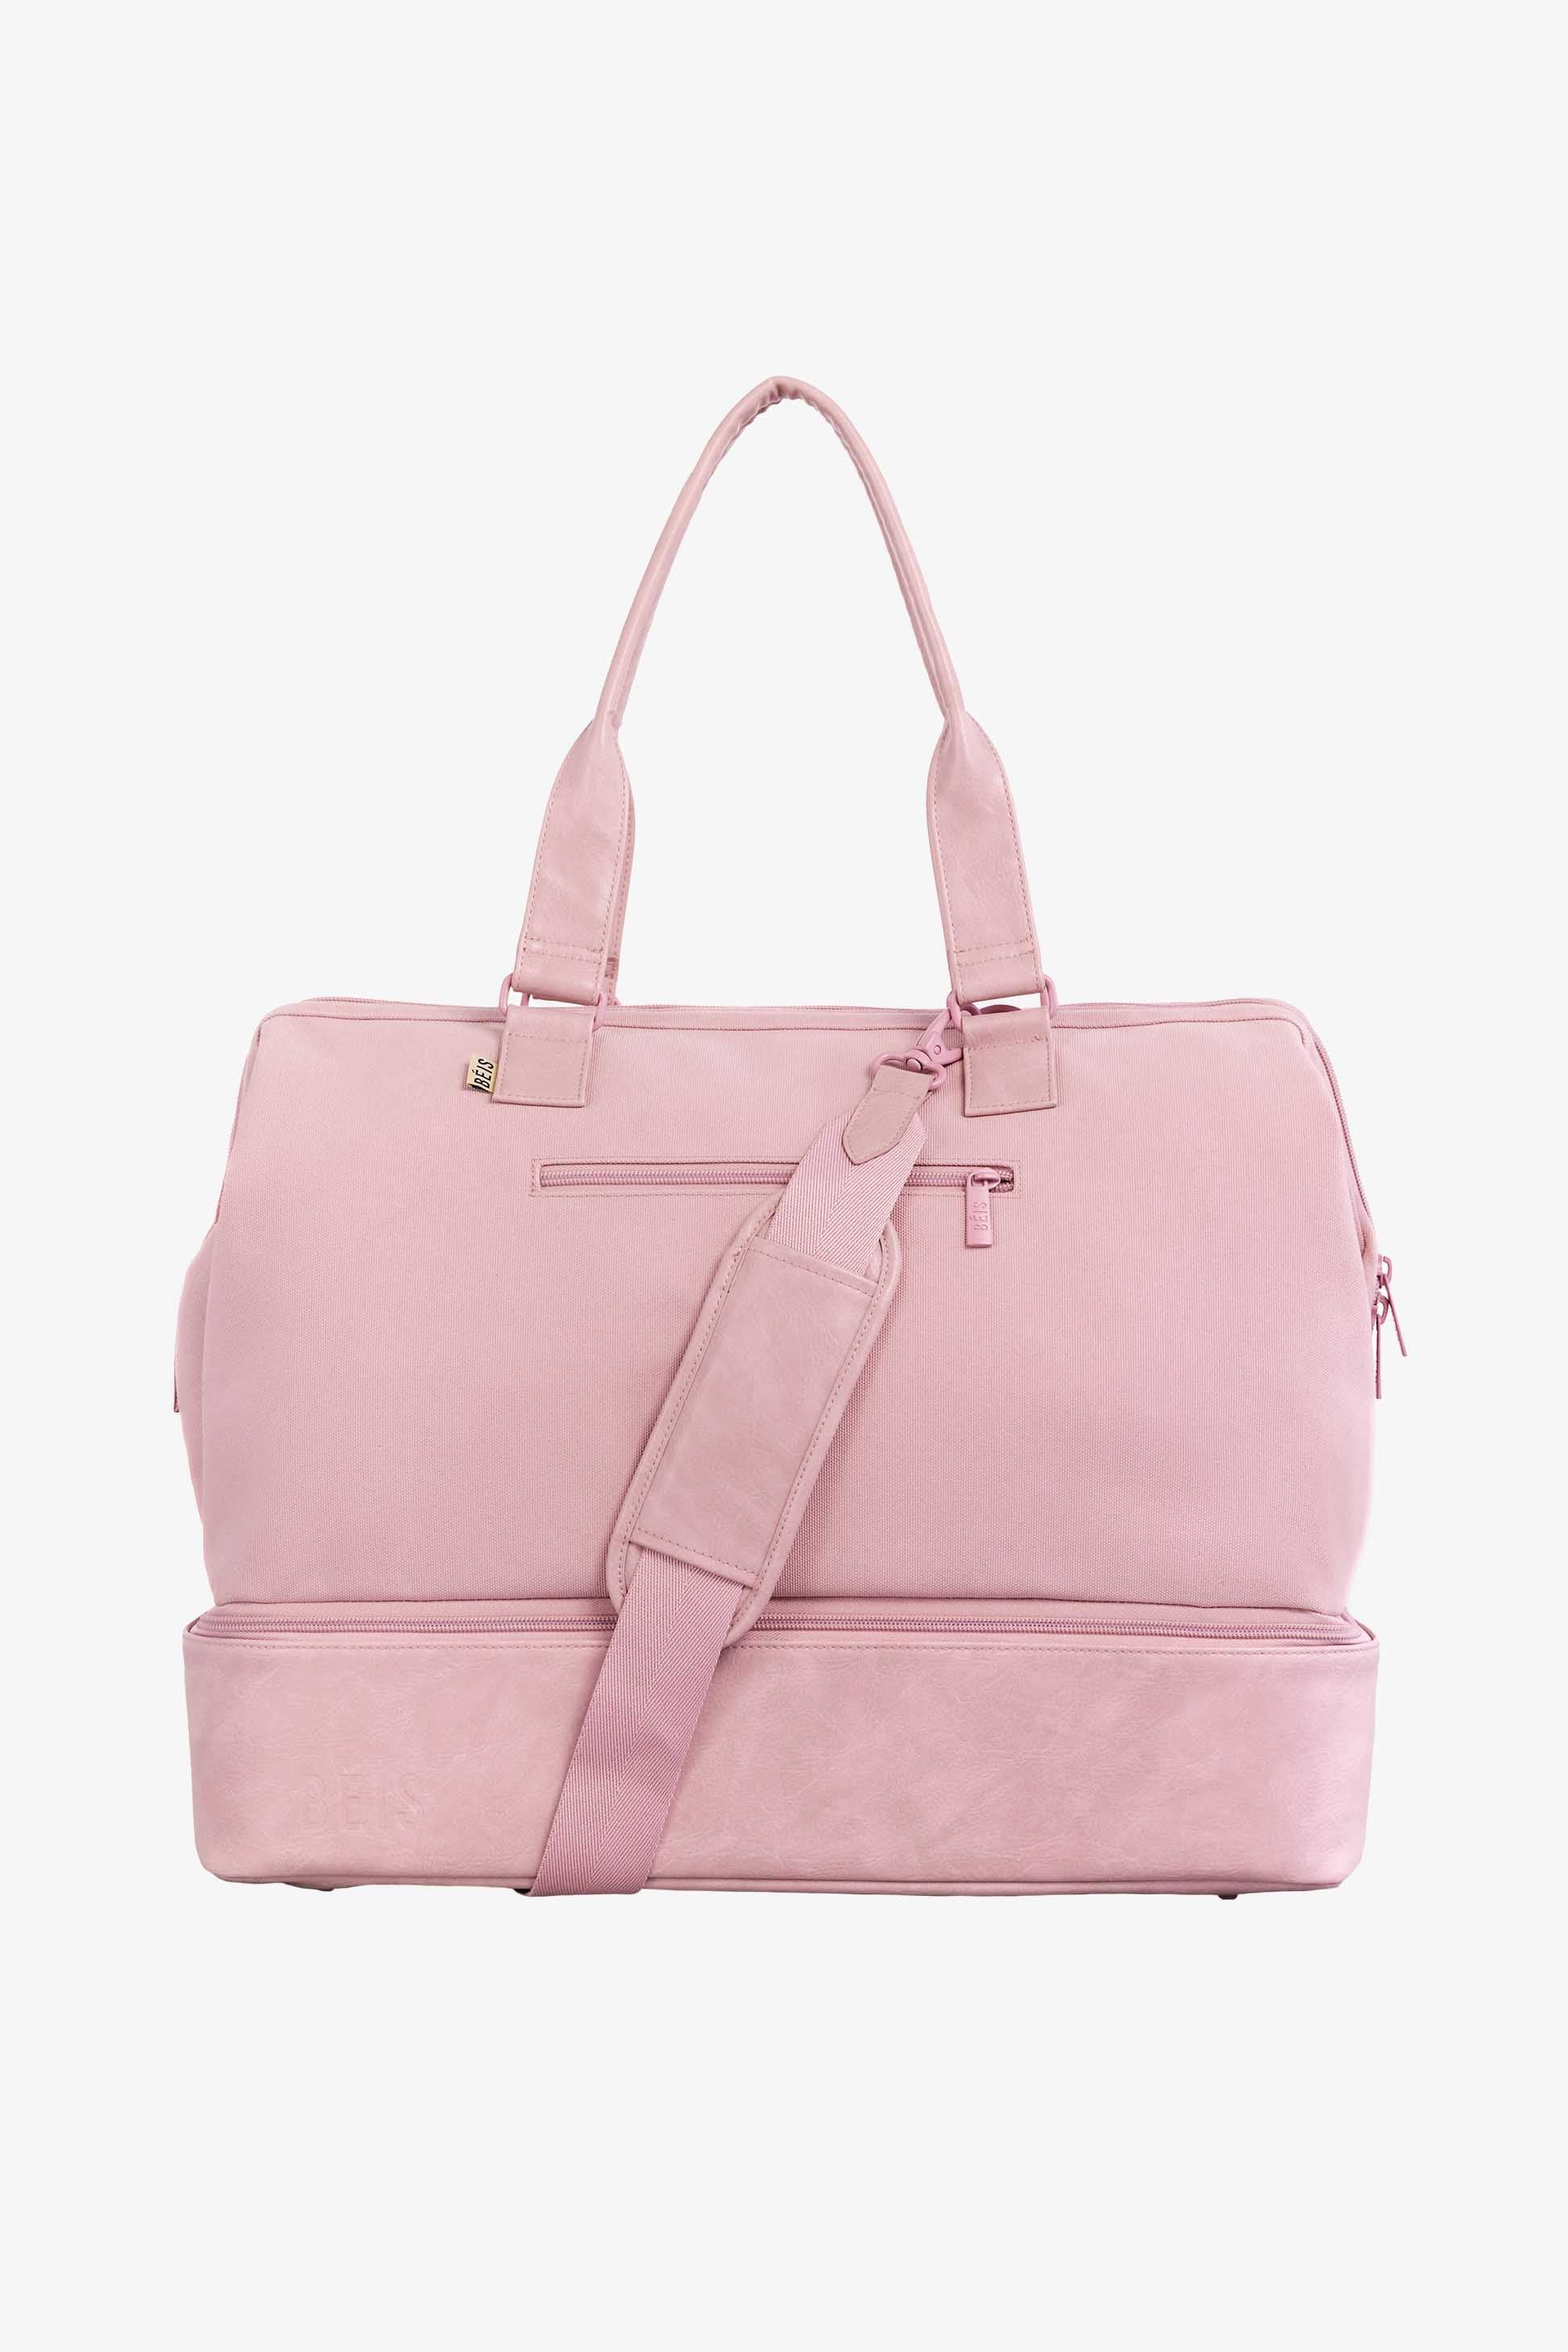 BÉIS 'The Weekender' in Atlas Pink - Weekender Travel Bag In Pink | BÉIS Travel